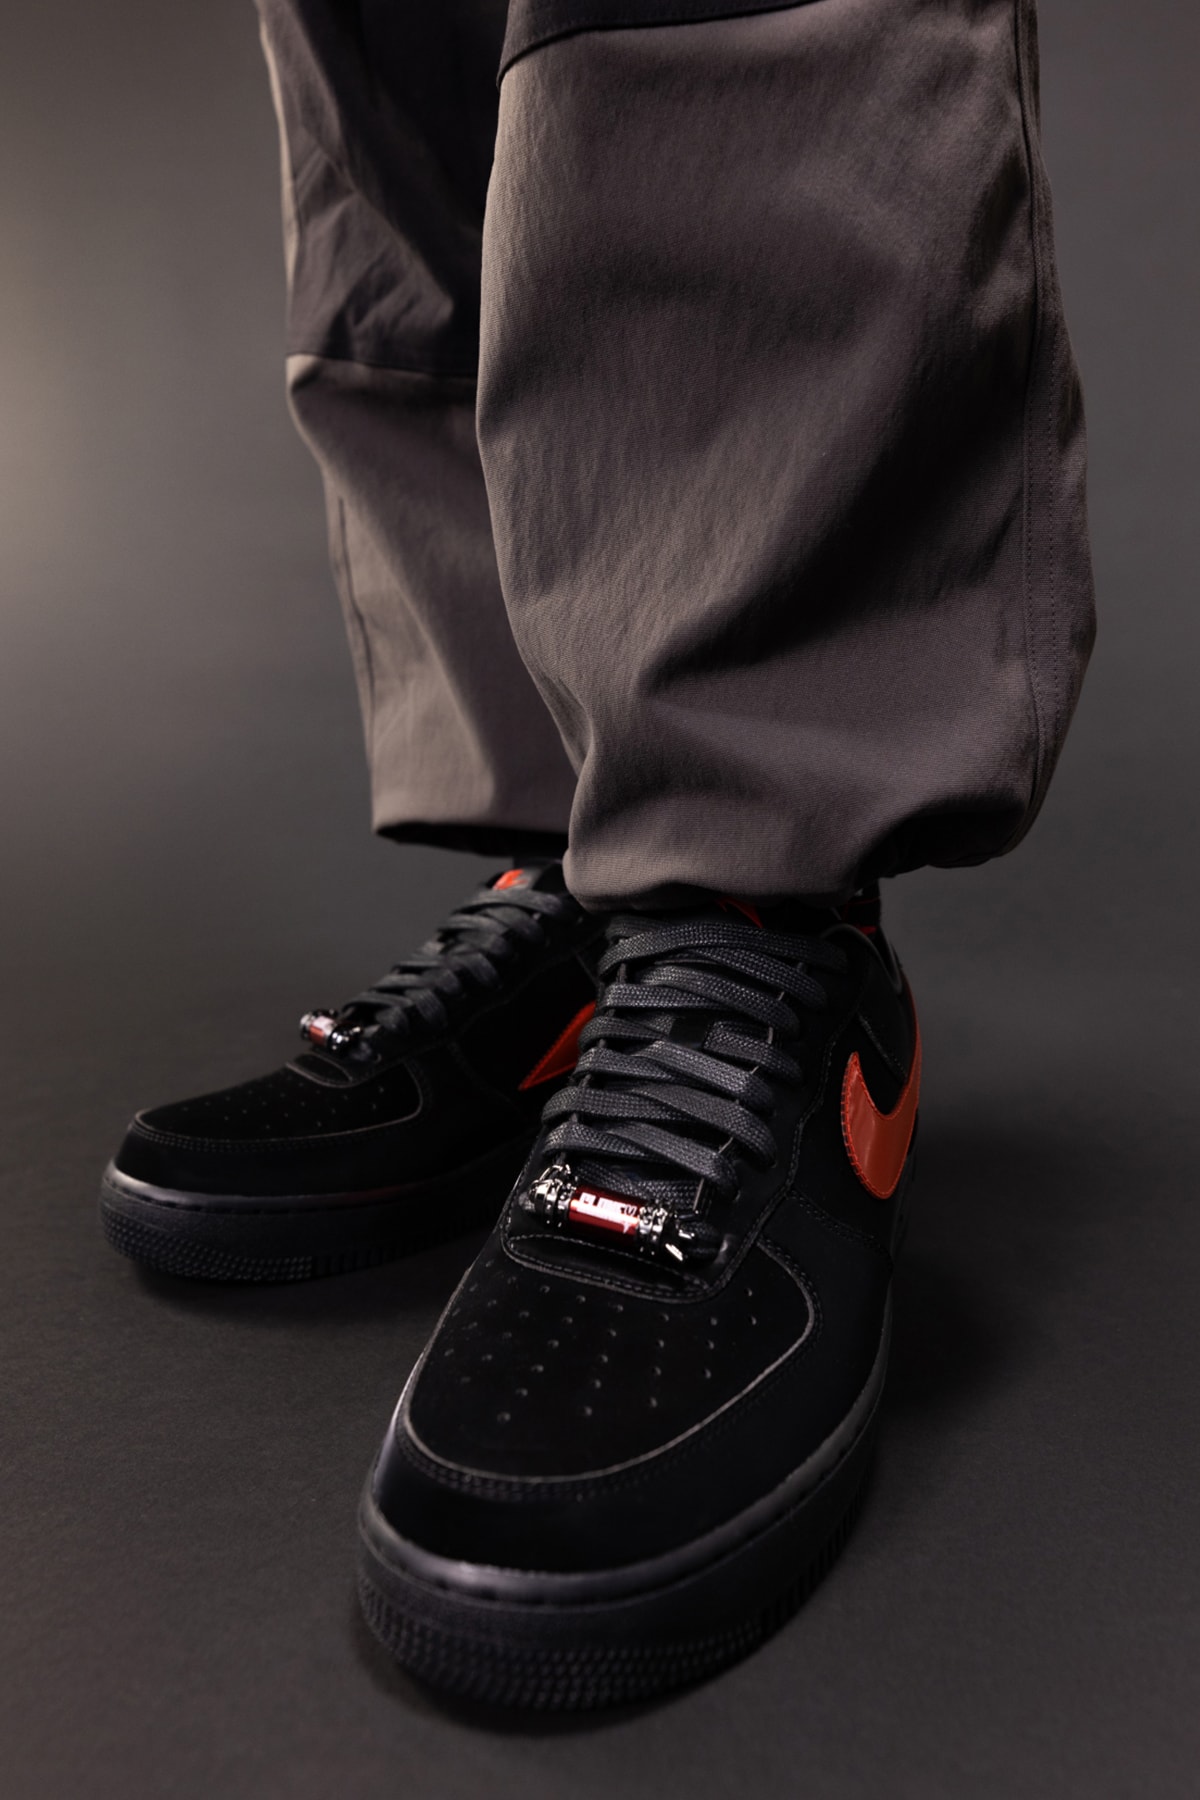 RTFKT x ナイキエアフォース 1 の実物スニーカーをゲットできるイベントが開催中 RTFKT x Nike Air Force 1 Takashi Murakami Release Info